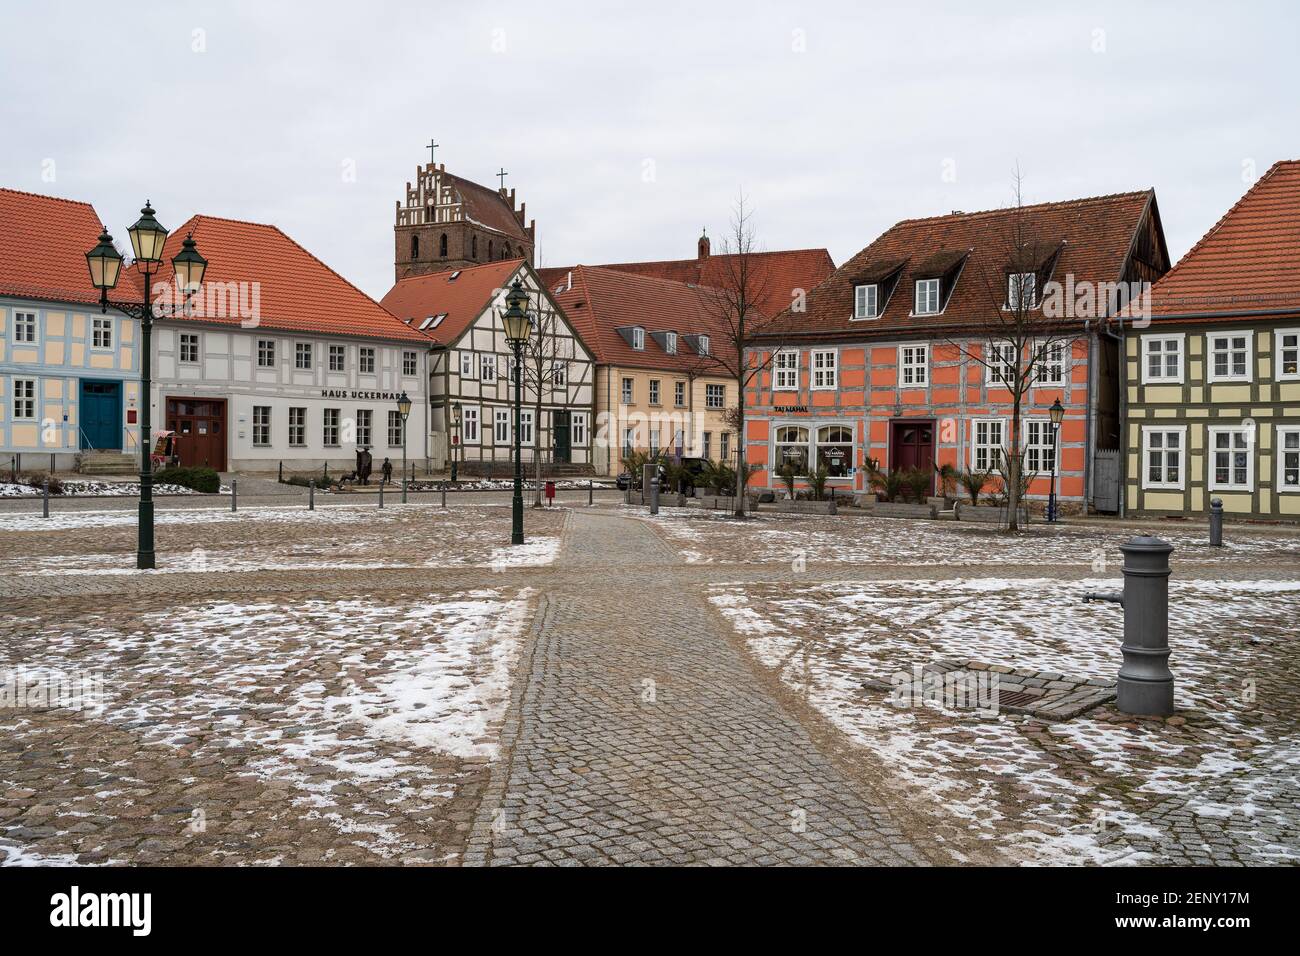 Angermuende, Germania. Piazza del mercato nel centro di un'antica città medievale (fondata nel 1254) nel quartiere di Uckermark, nello stato del Brandeburgo. Foto Stock